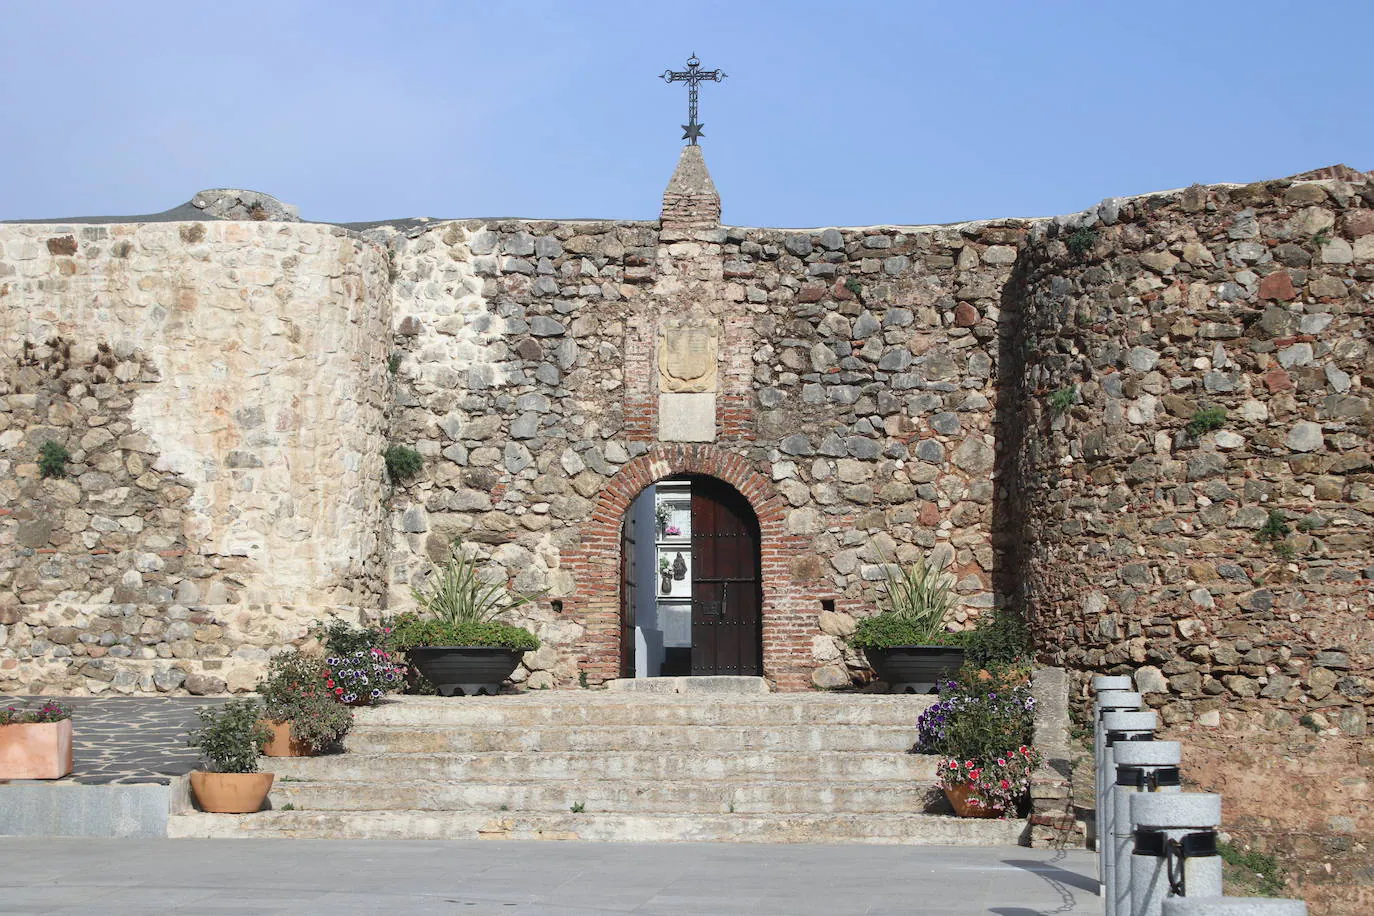 En Benadalid, los restos de sus vecinos descansan sobre los restos de un antiguo castillo, un cementerio singular en la provincia de Málaga que atesora el pequeño pueblo del Valle del Genal, en la Serranía de Ronda, con solo casi 240 habitantes